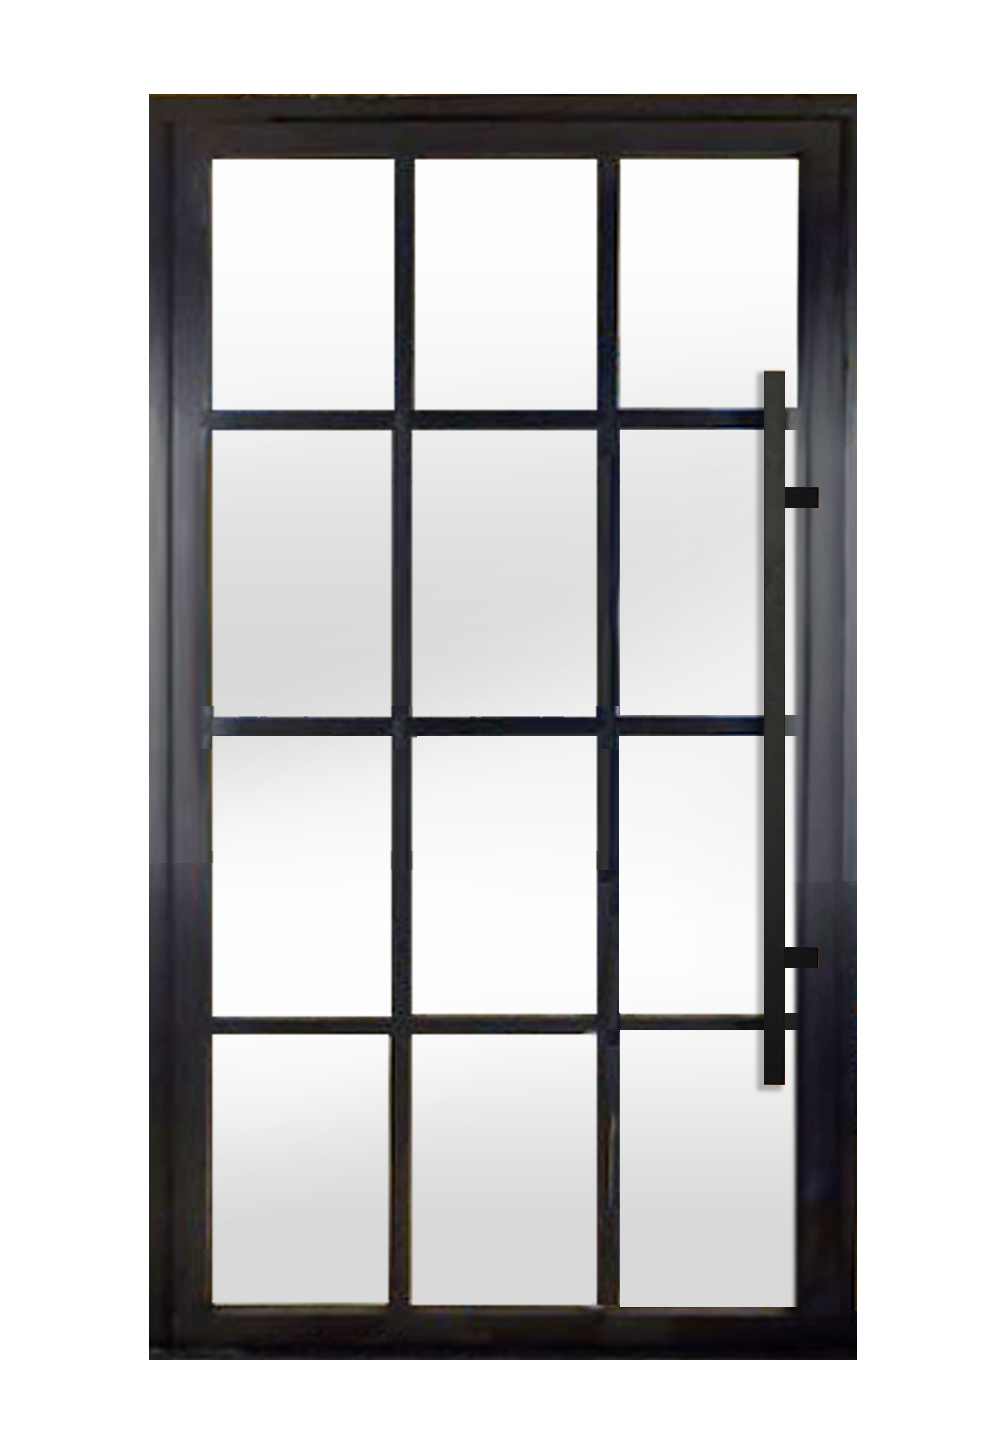 Glass Door